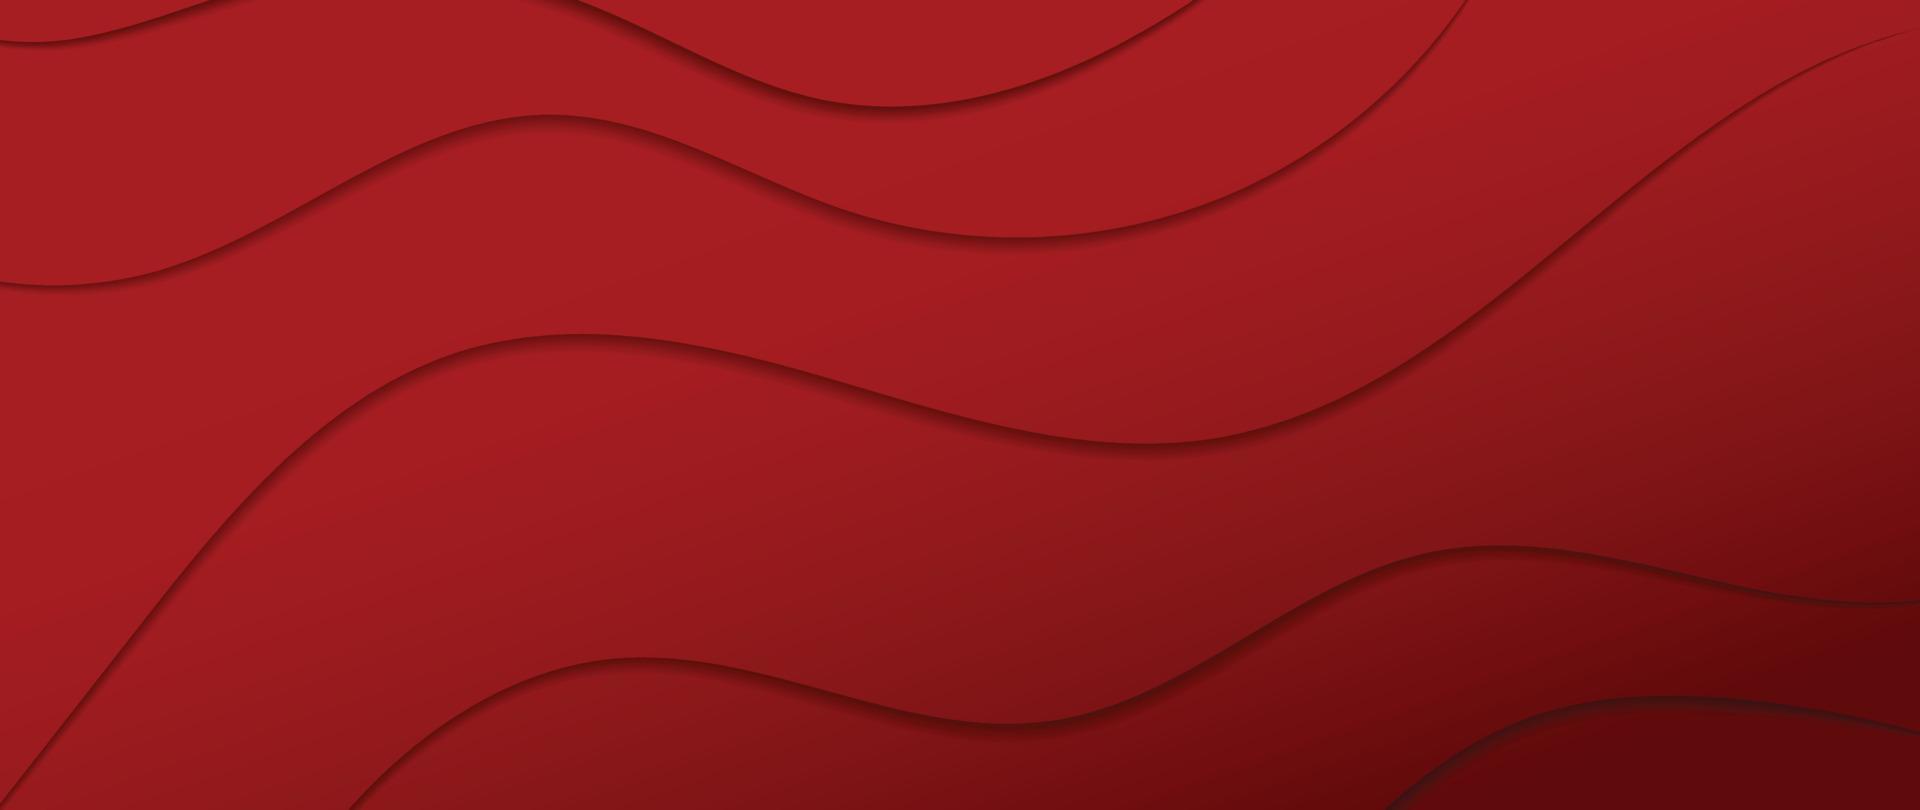 abstrakter Hintergrundvektor mit rotem Farbverlauf. modernes Tapetendesign mit organischen Formen, Linien, Wellen, Kurven. illustration für chinesisches neujahr, werbung, verkaufsbanner, geschäfts- und verpackungsdesign. vektor